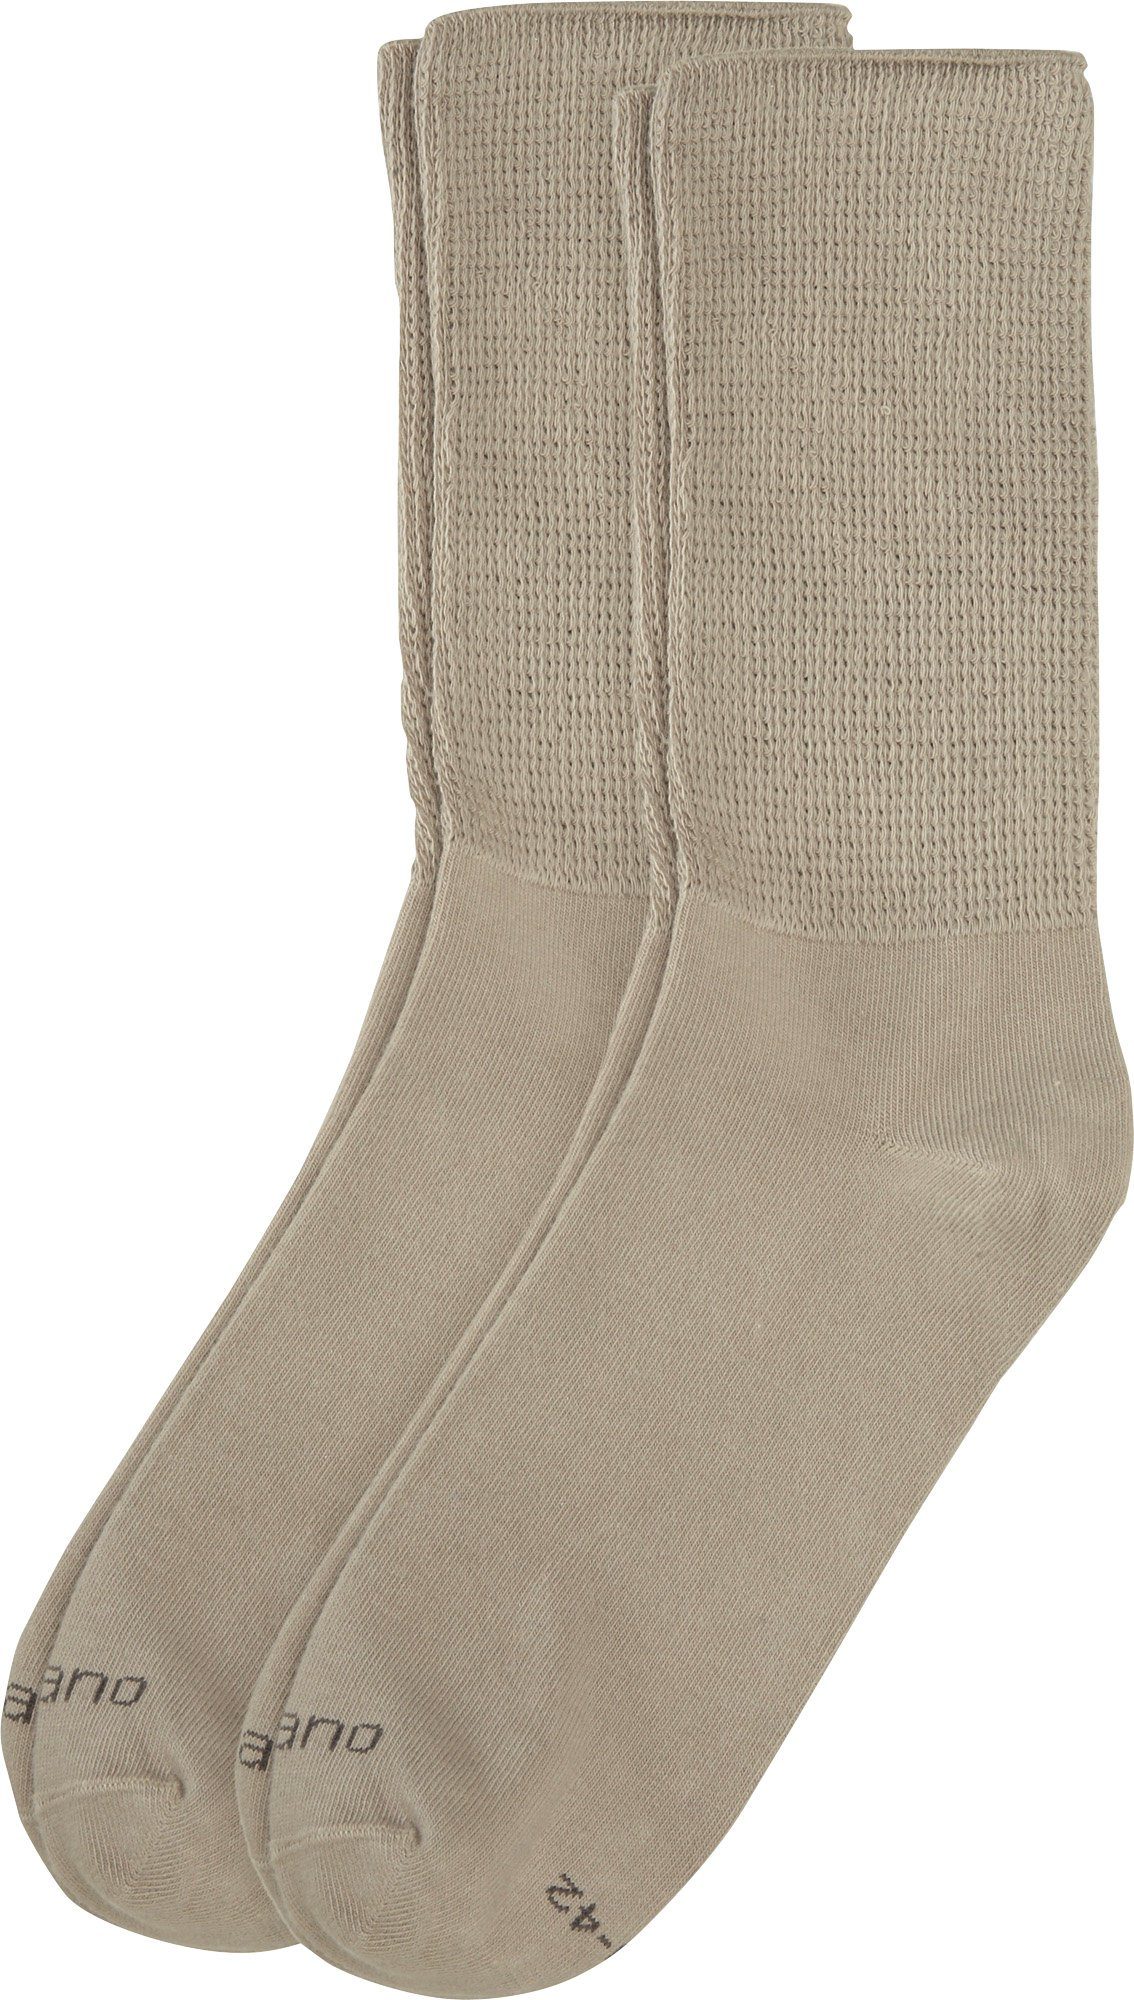 Unisex-Socken 2 Softbund mit Socken Paar Uni Camano beige